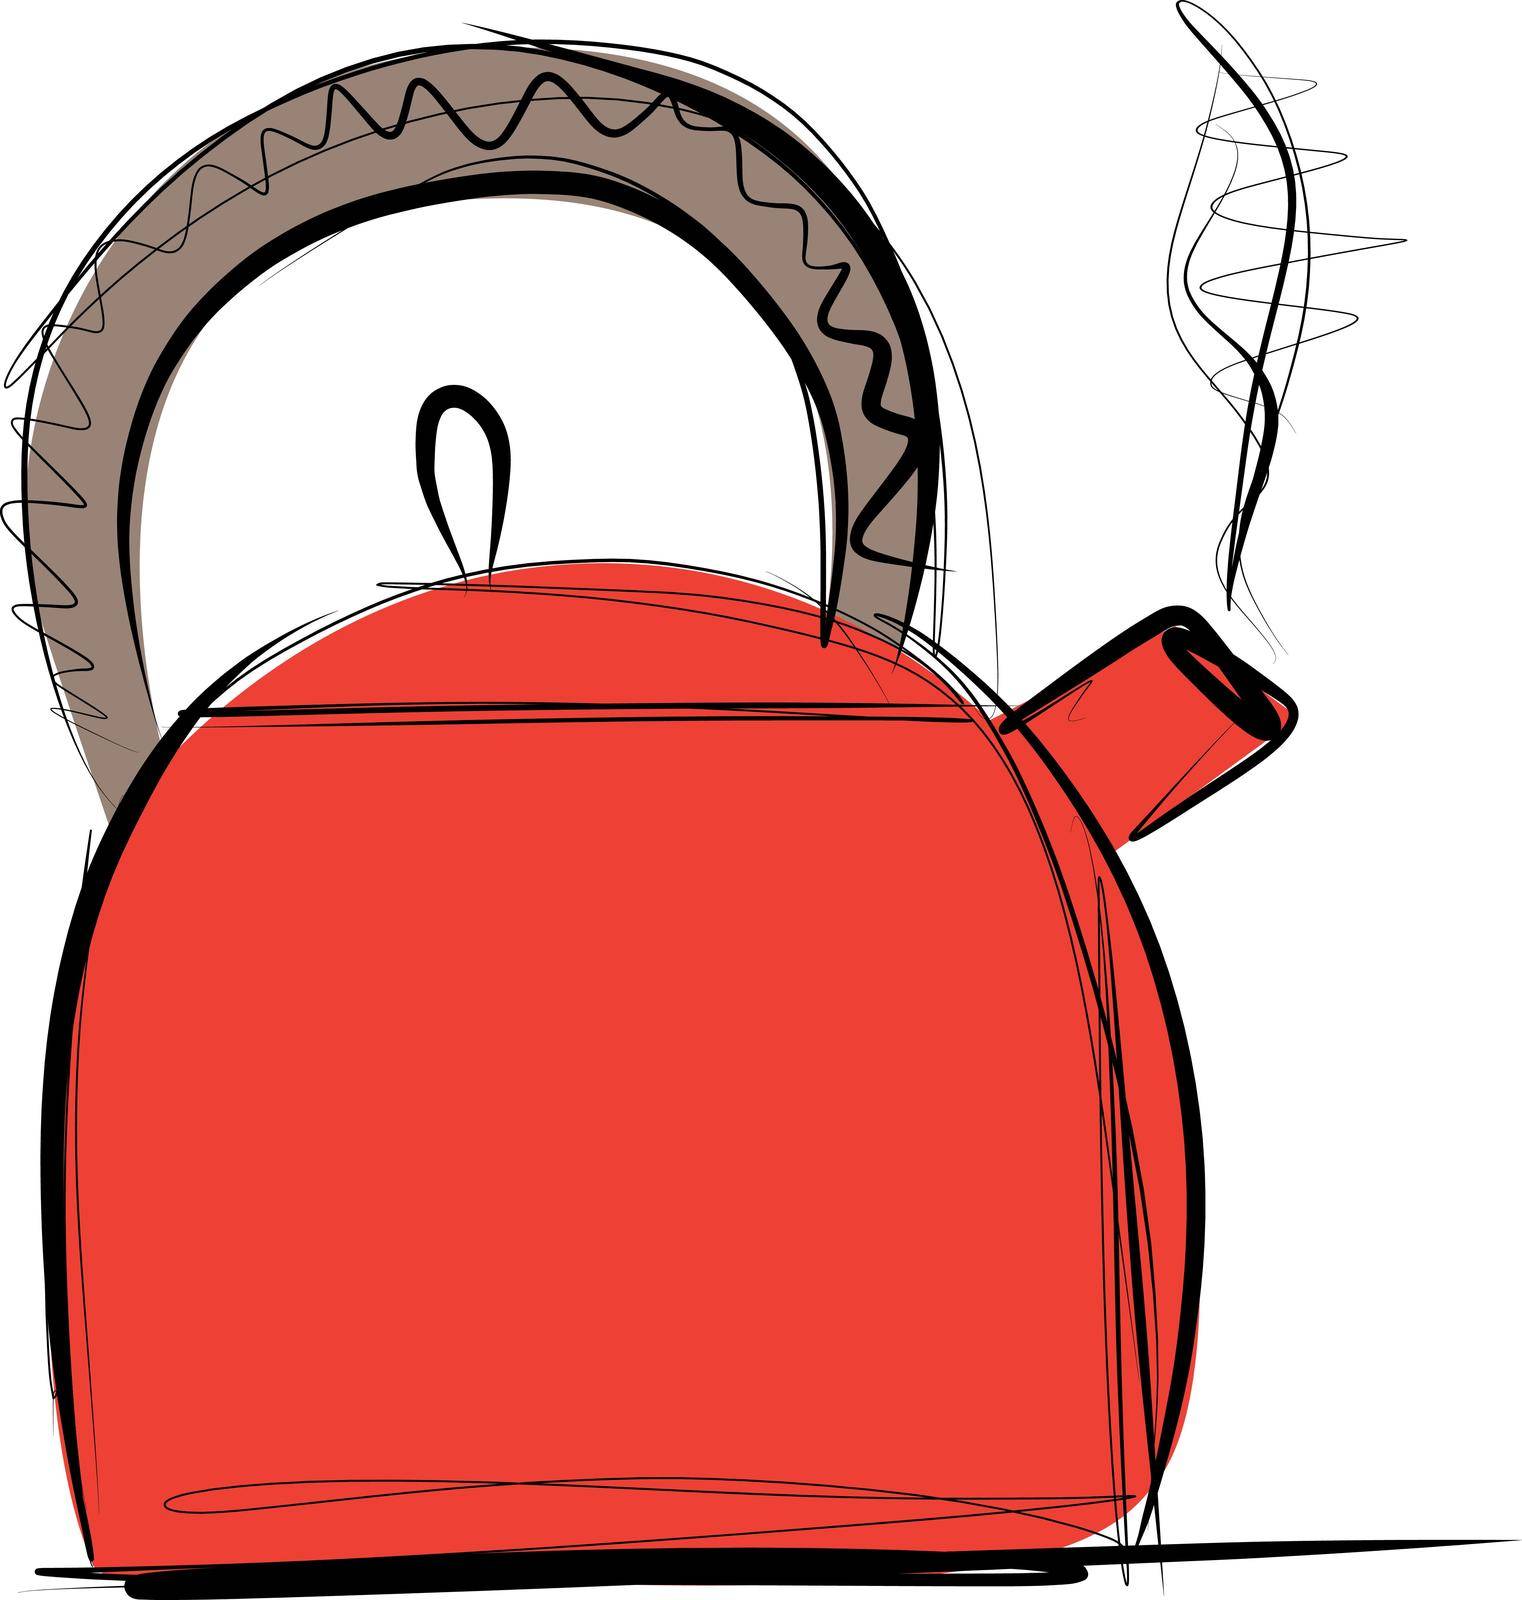 Sketch of water boiler kitchen kettle vector illustration